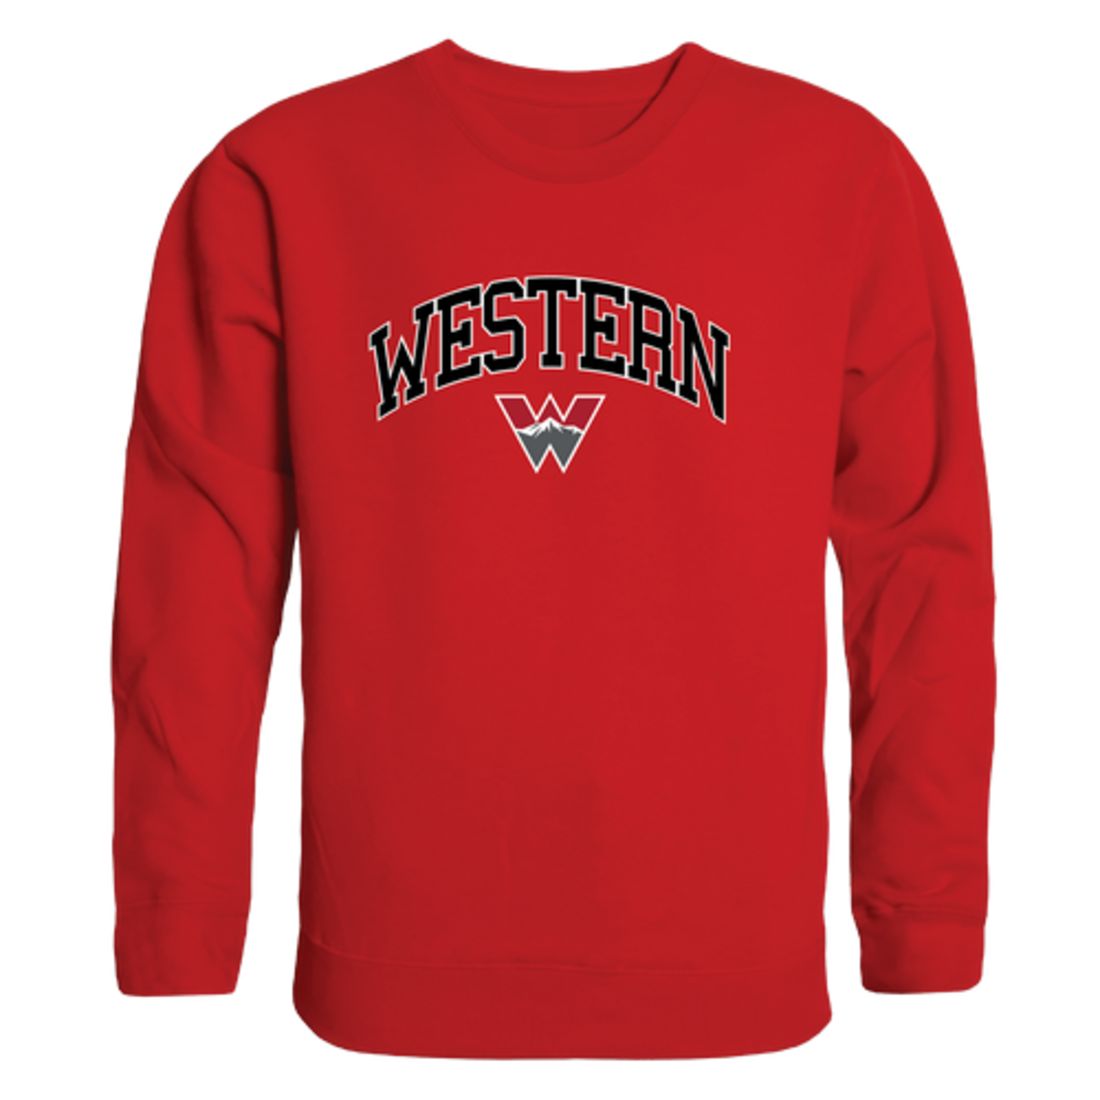 Western-Colorado-University-Mountaineers-Campus-Fleece-Crewneck-Pullover-Sweatshirt